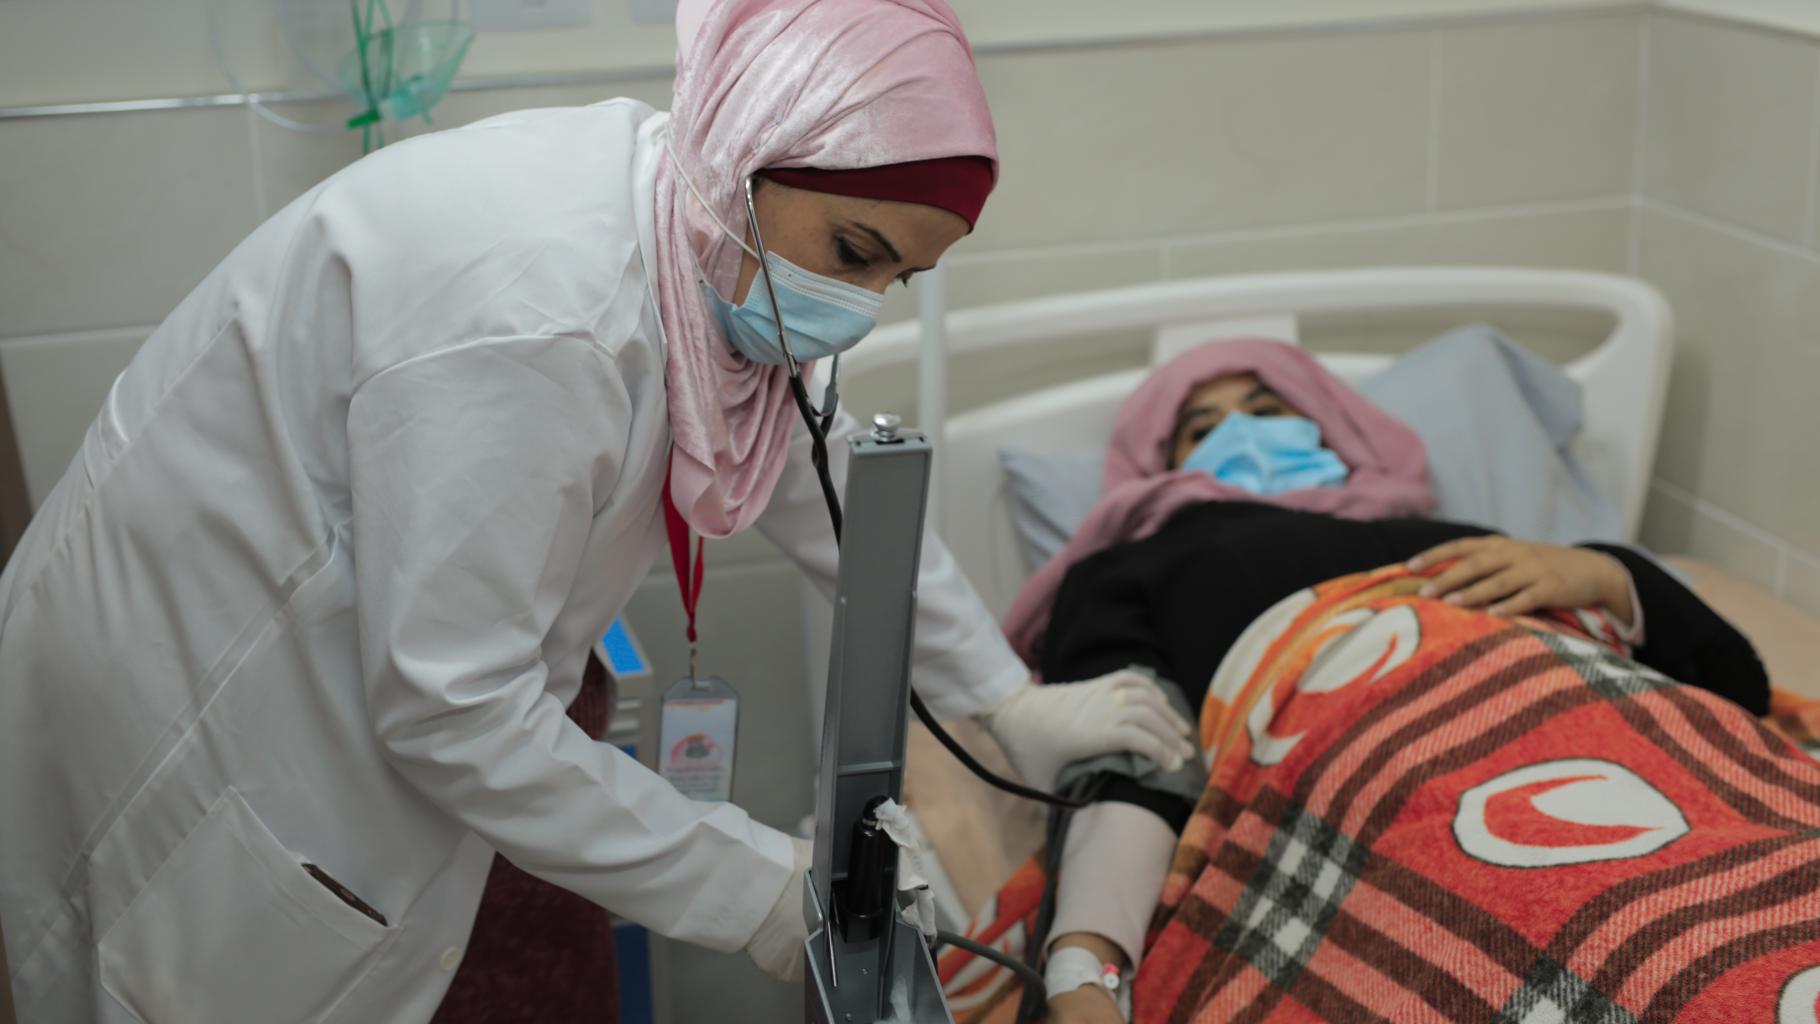 Heba Shalan, bekleidet mit einem weißen Kittel, misst Blutdruck einer Patientin, die in einem Krankenhausbett liegt. Beide tragen einen Mundschutz.